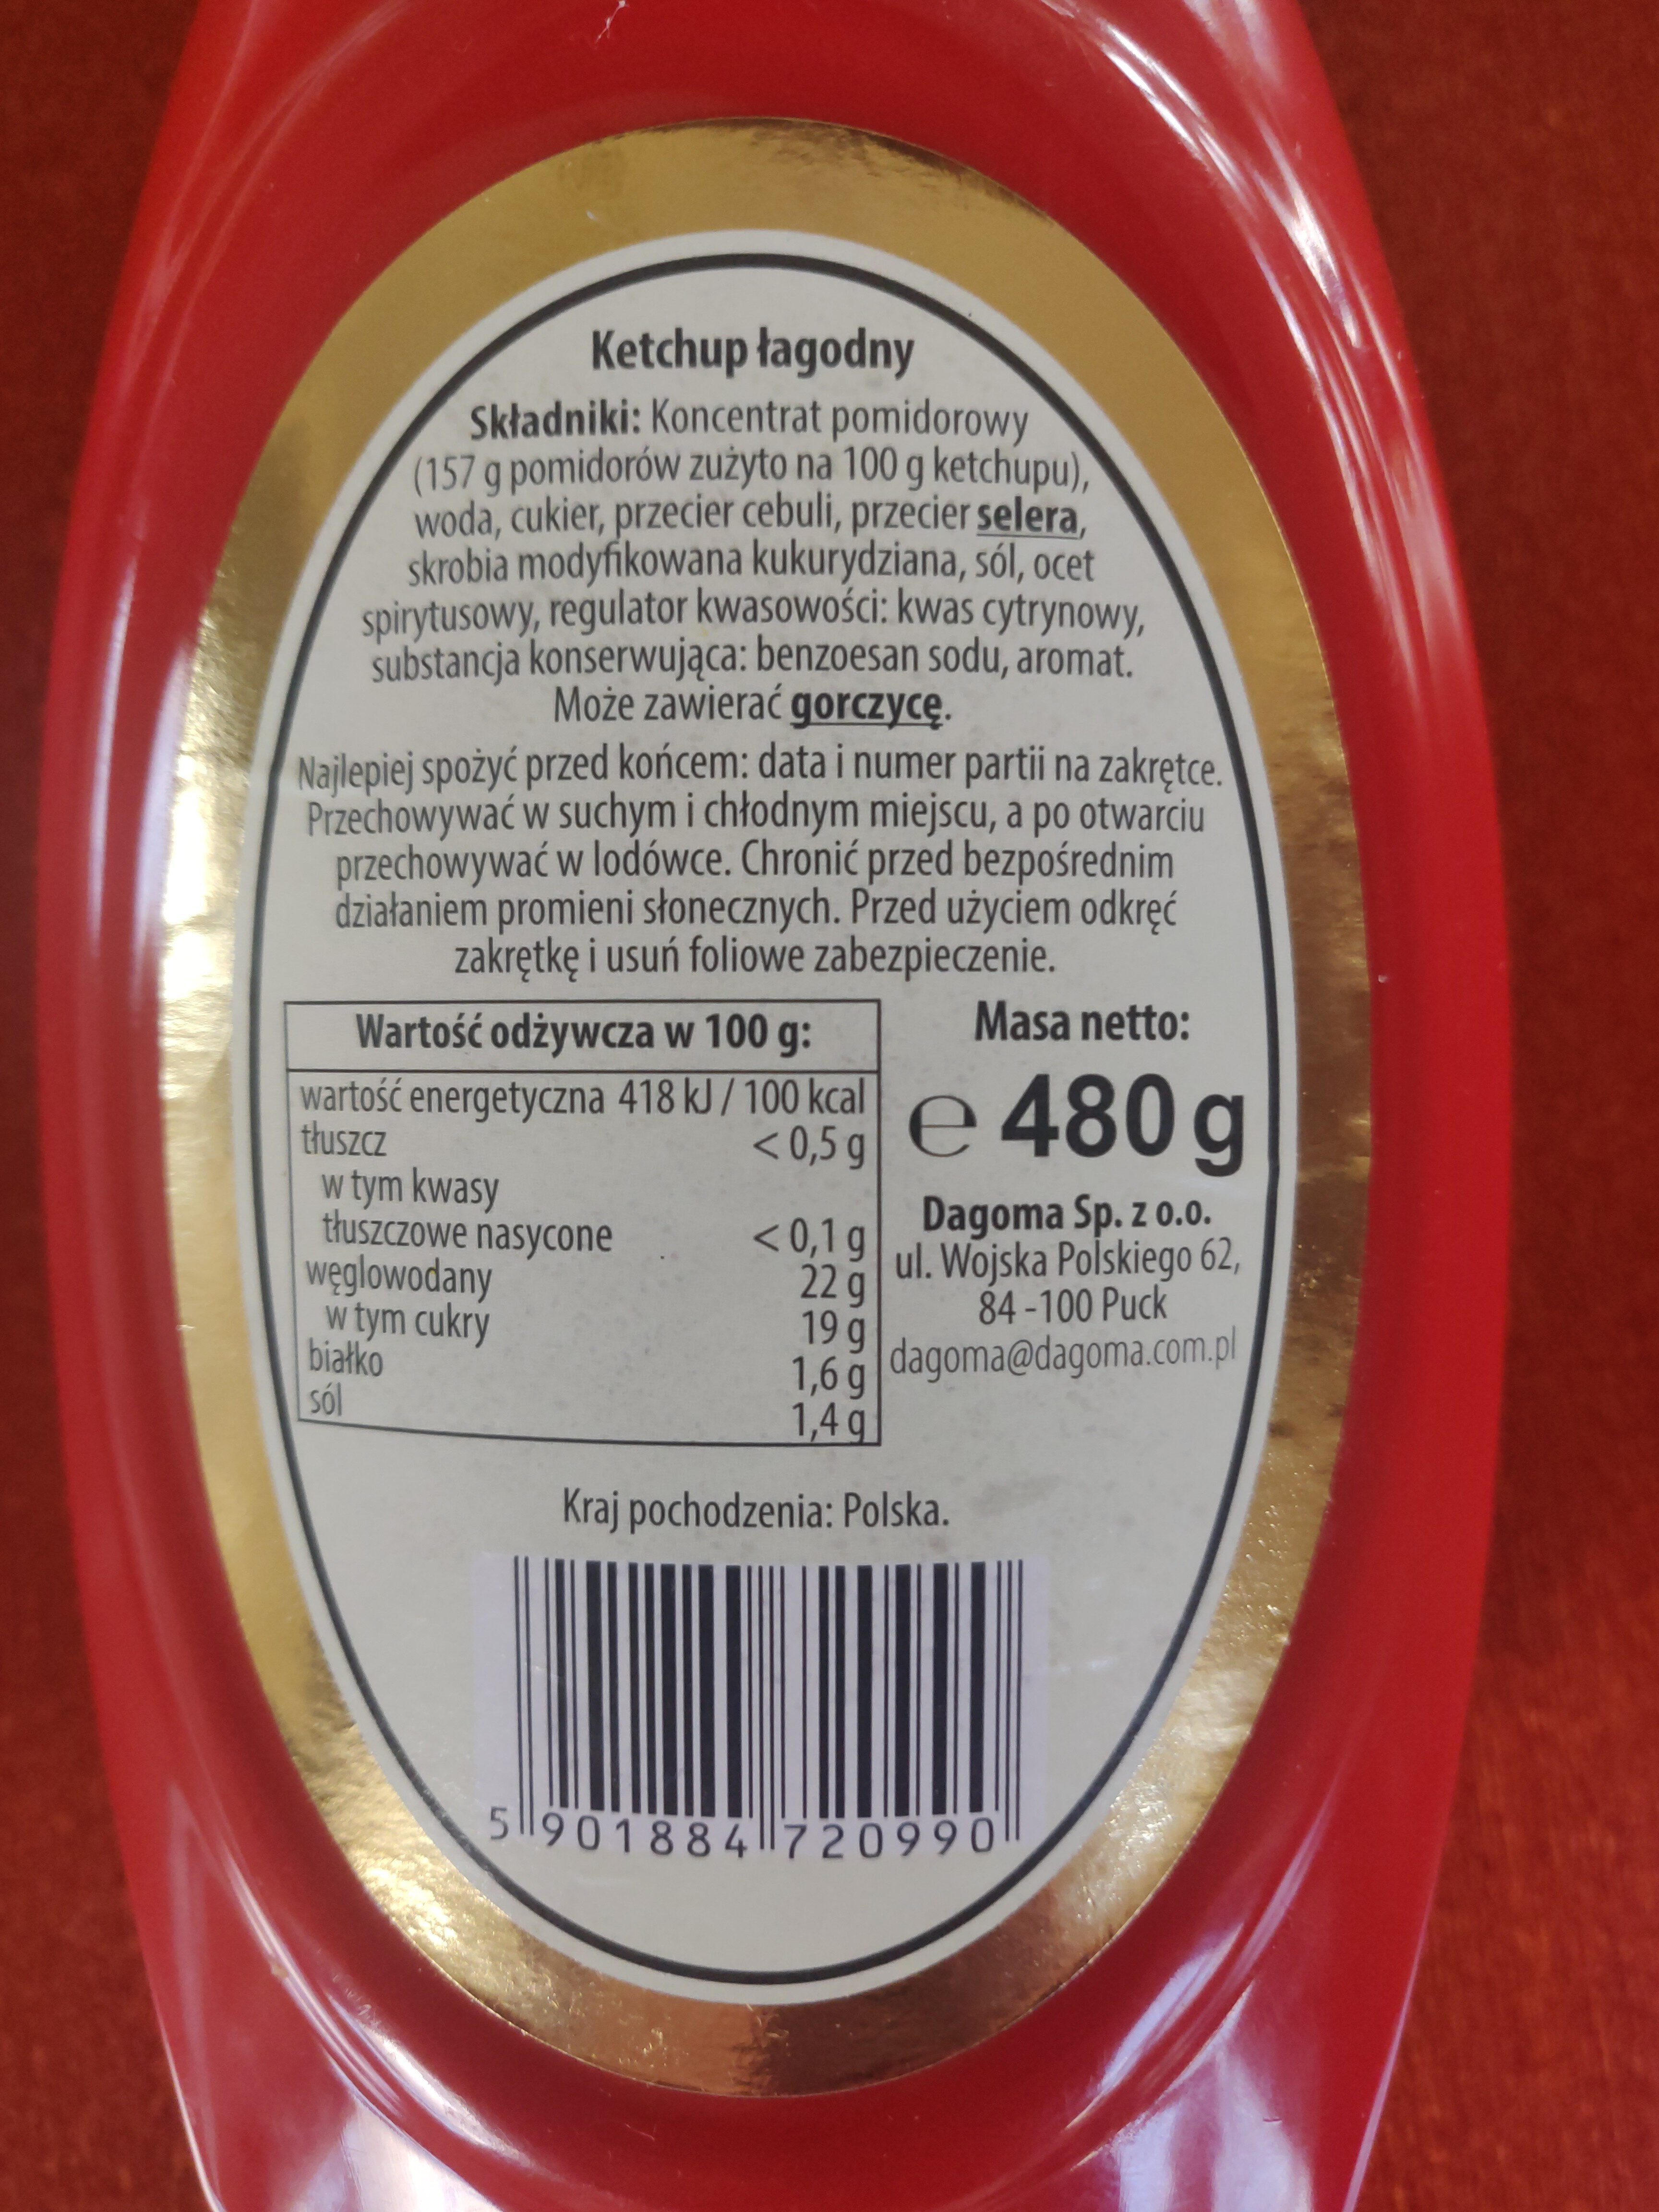 Ketchup Kaszebsczi - Produkt - pl